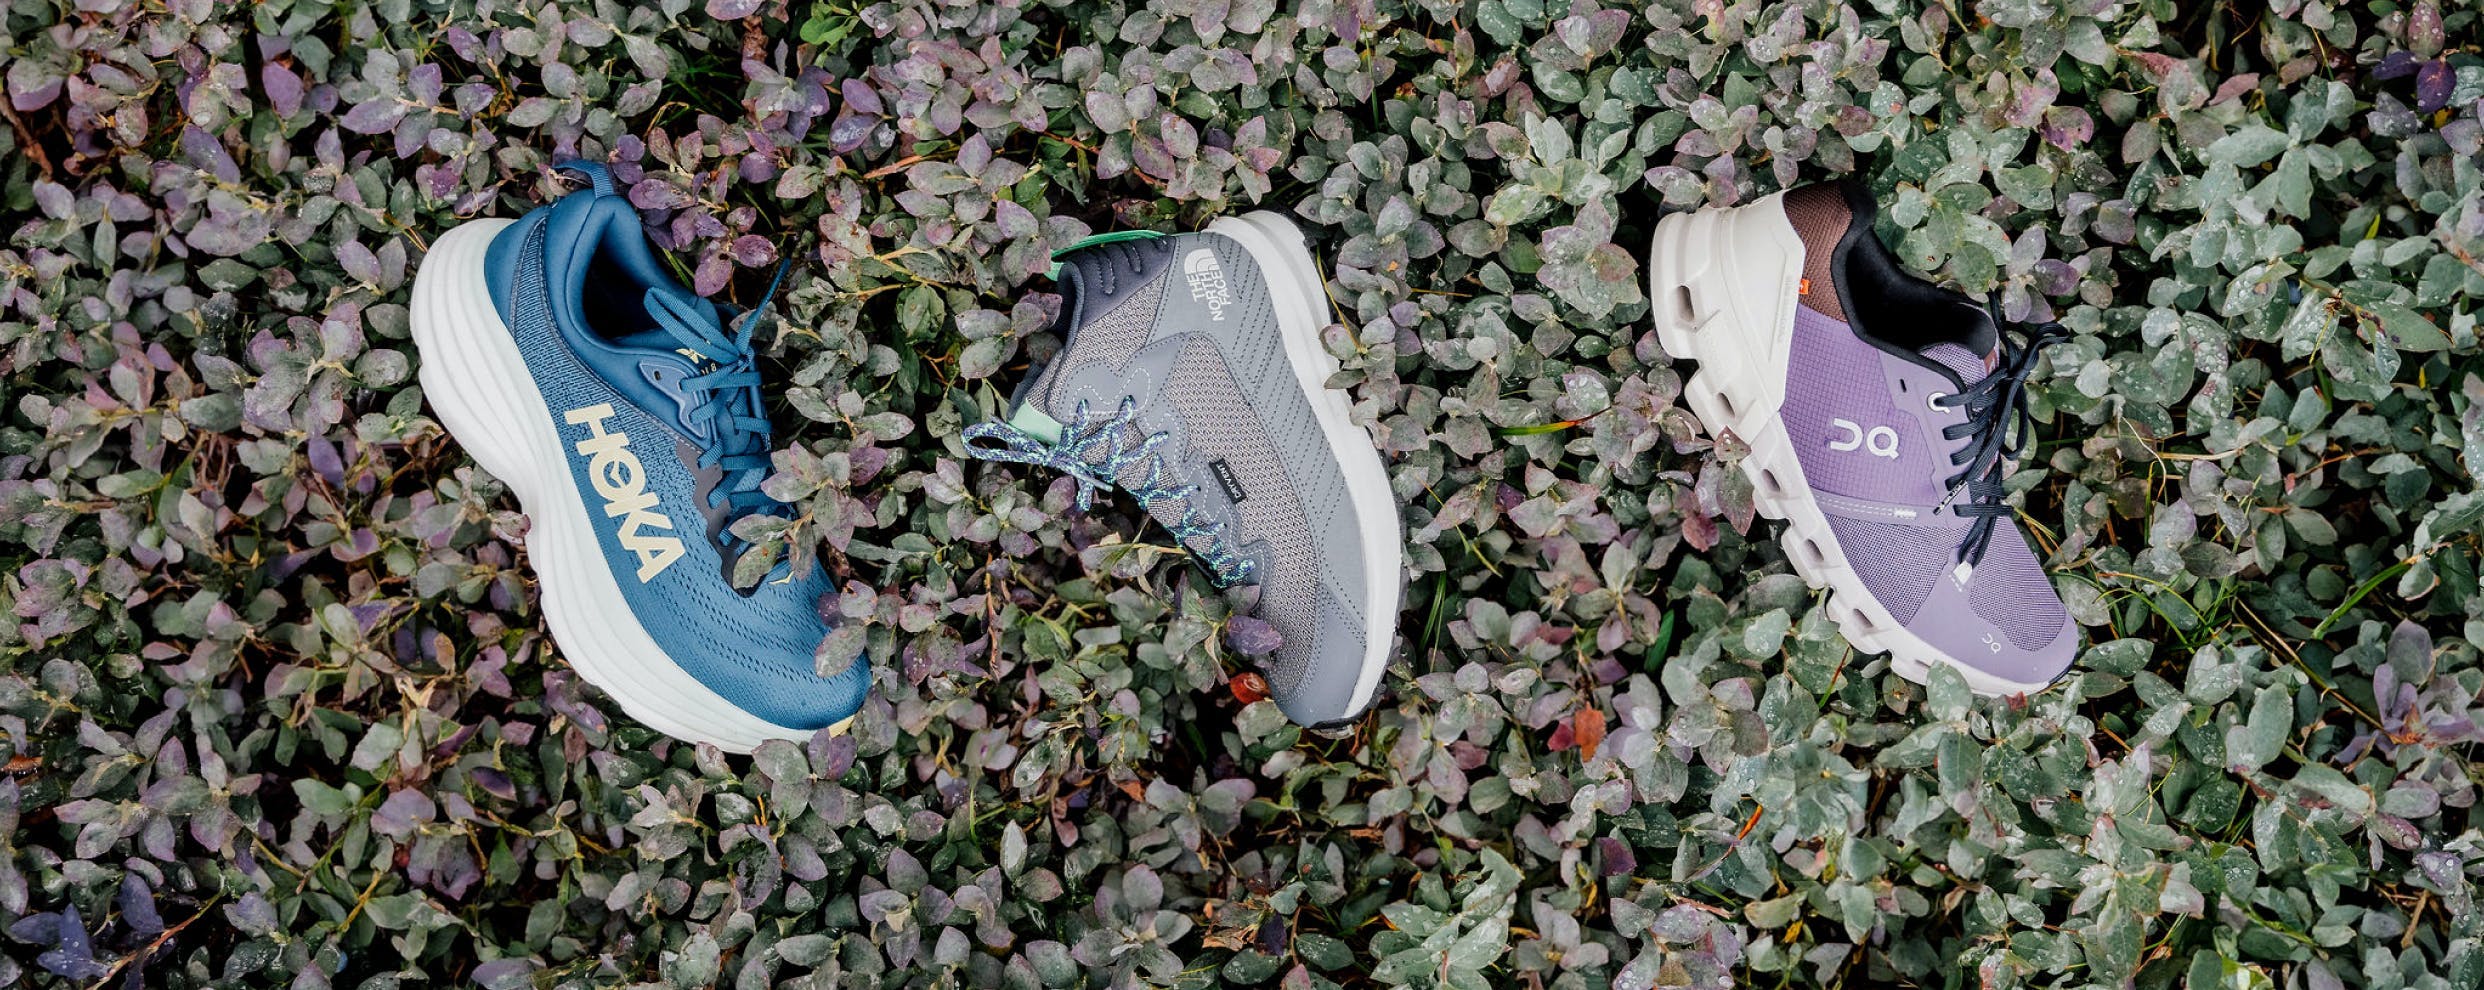 Nouveau souliers. Semelles adhérents, étoffes imperméables et matériaux recyclés pour explorer les sentiers.